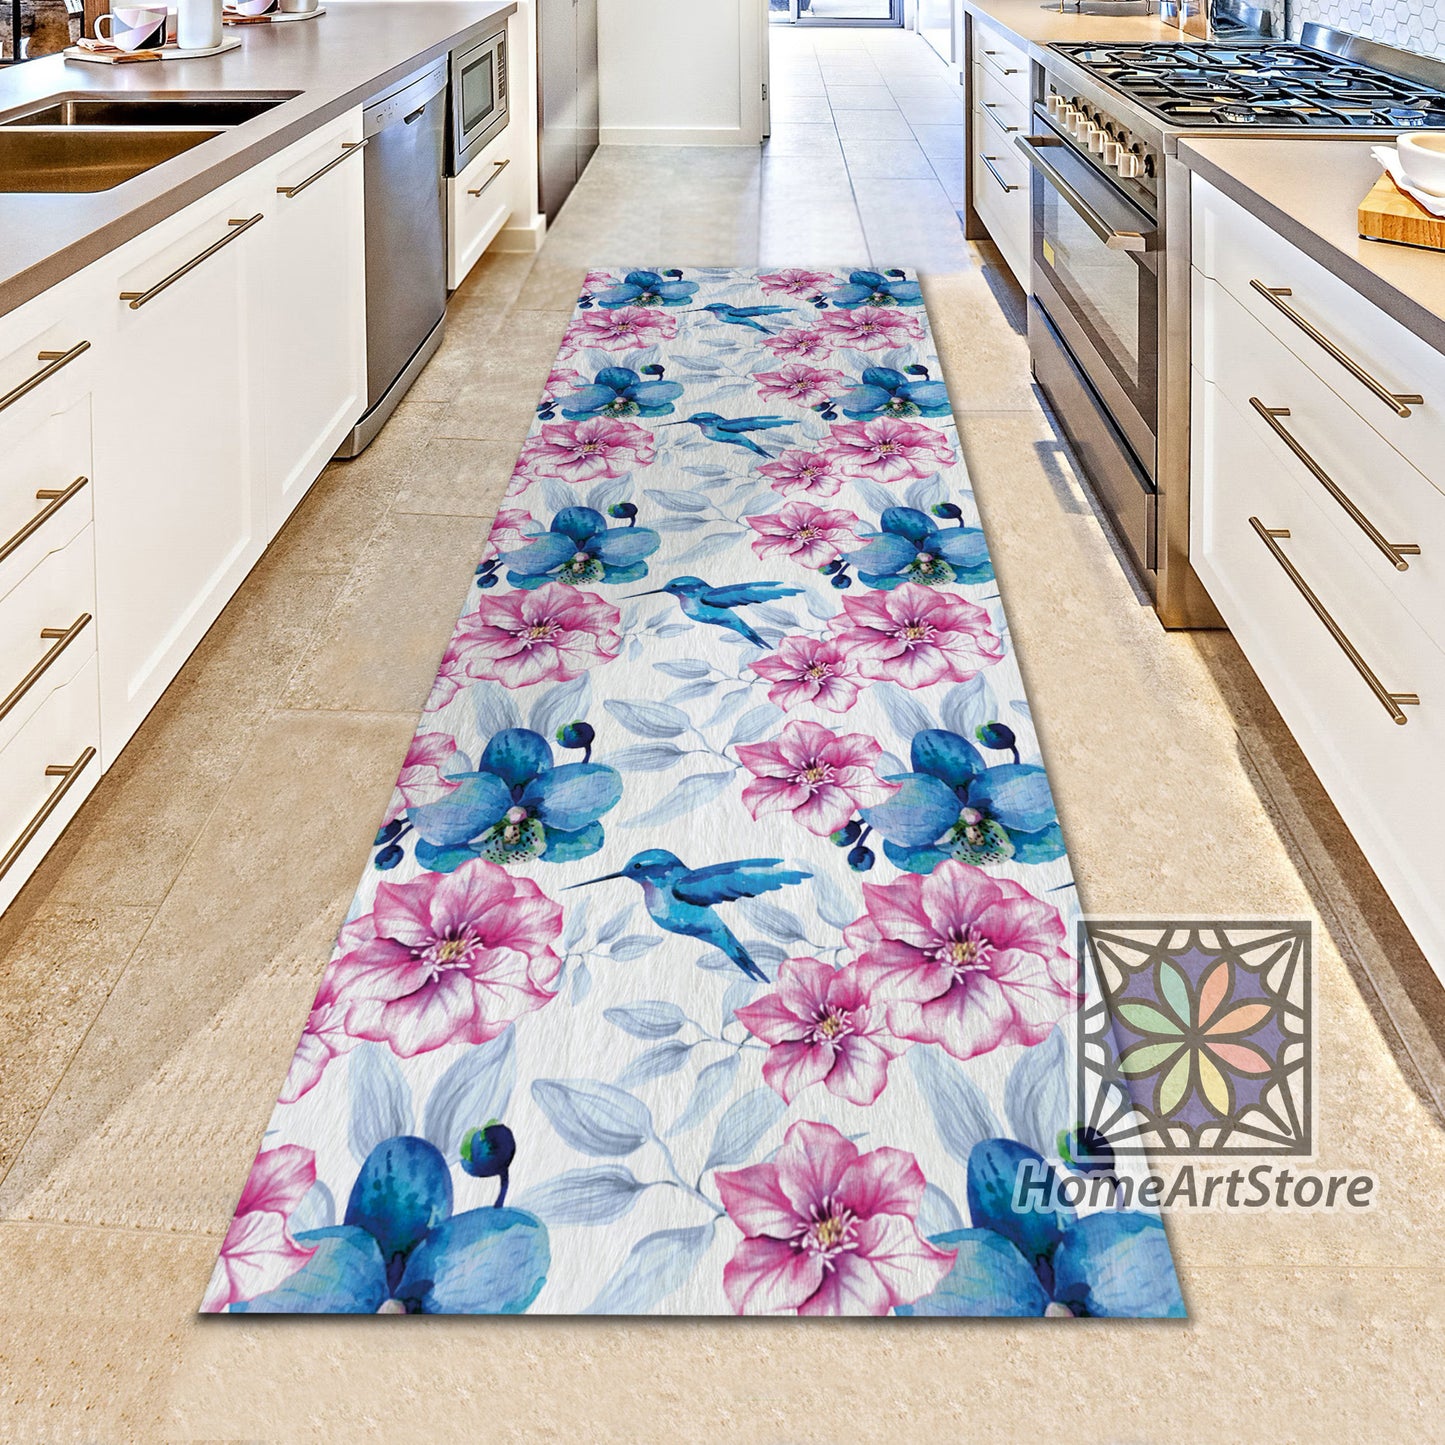 Blue Orchid Flowers Rug, Pink Floral Runner Carpet, Hallway Runner Mat, Modern Home Decor